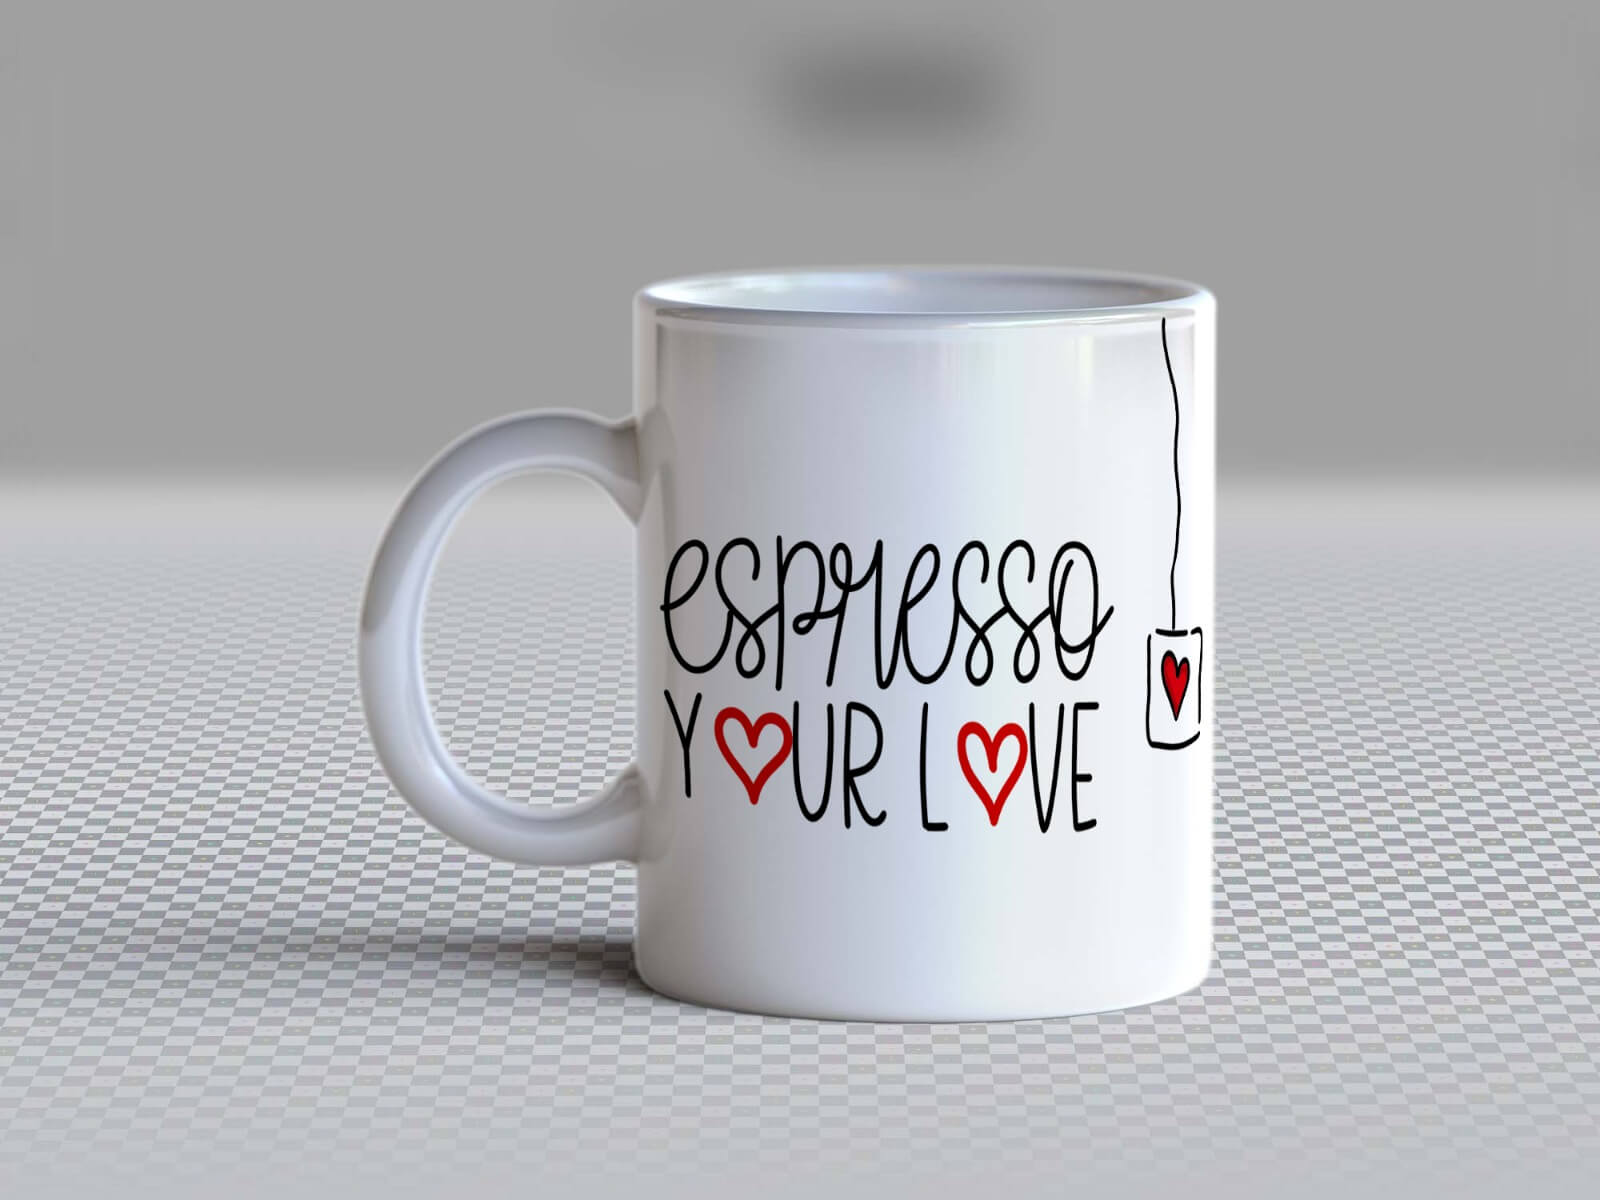 Espresso your love - MG228